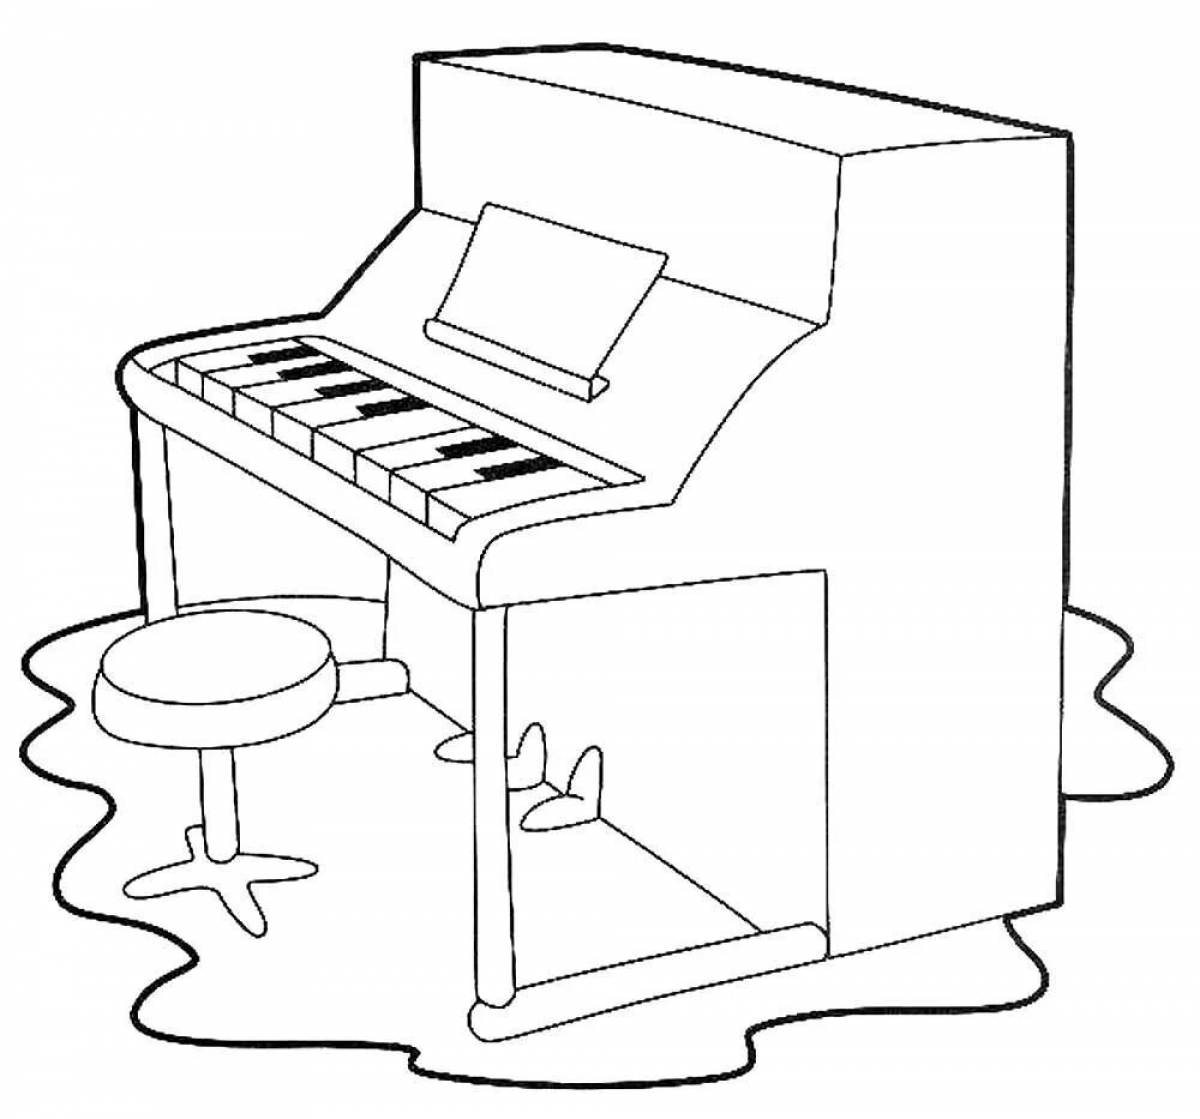 Children's piano #21